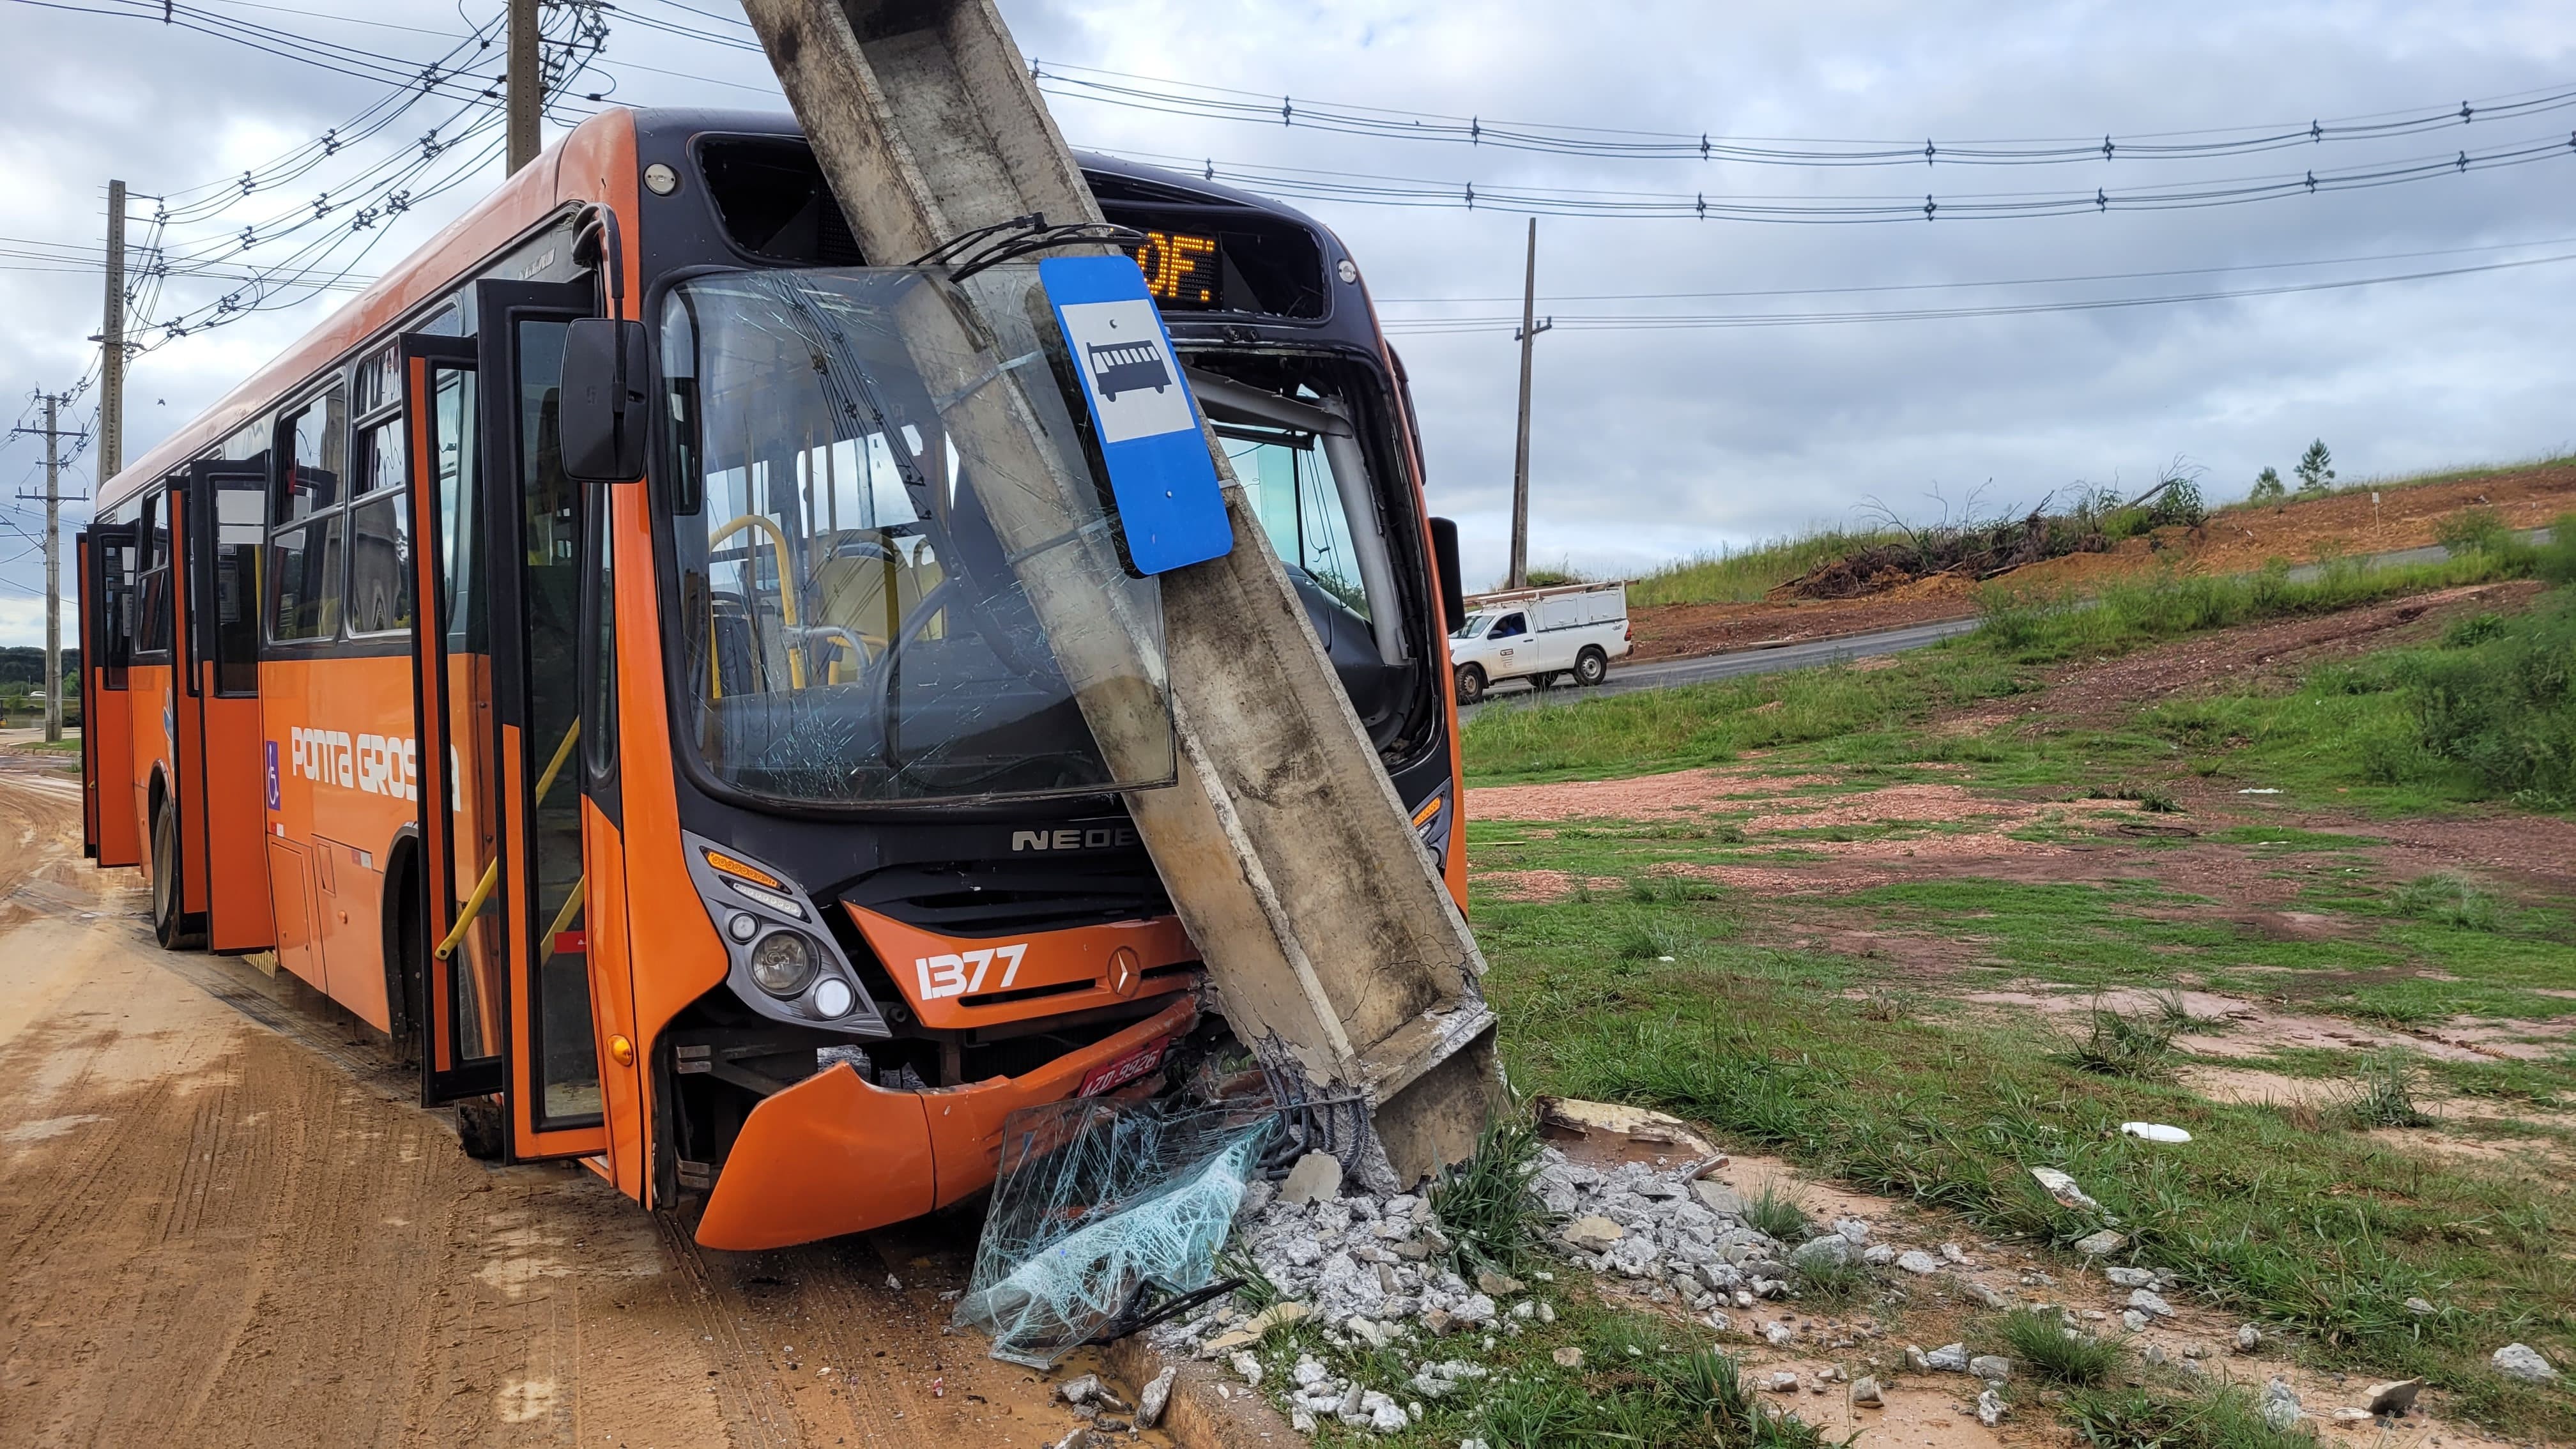 Seis pessoas ficam feridas após ônibus escorregar na lama e bater em poste em Ponta Grossa